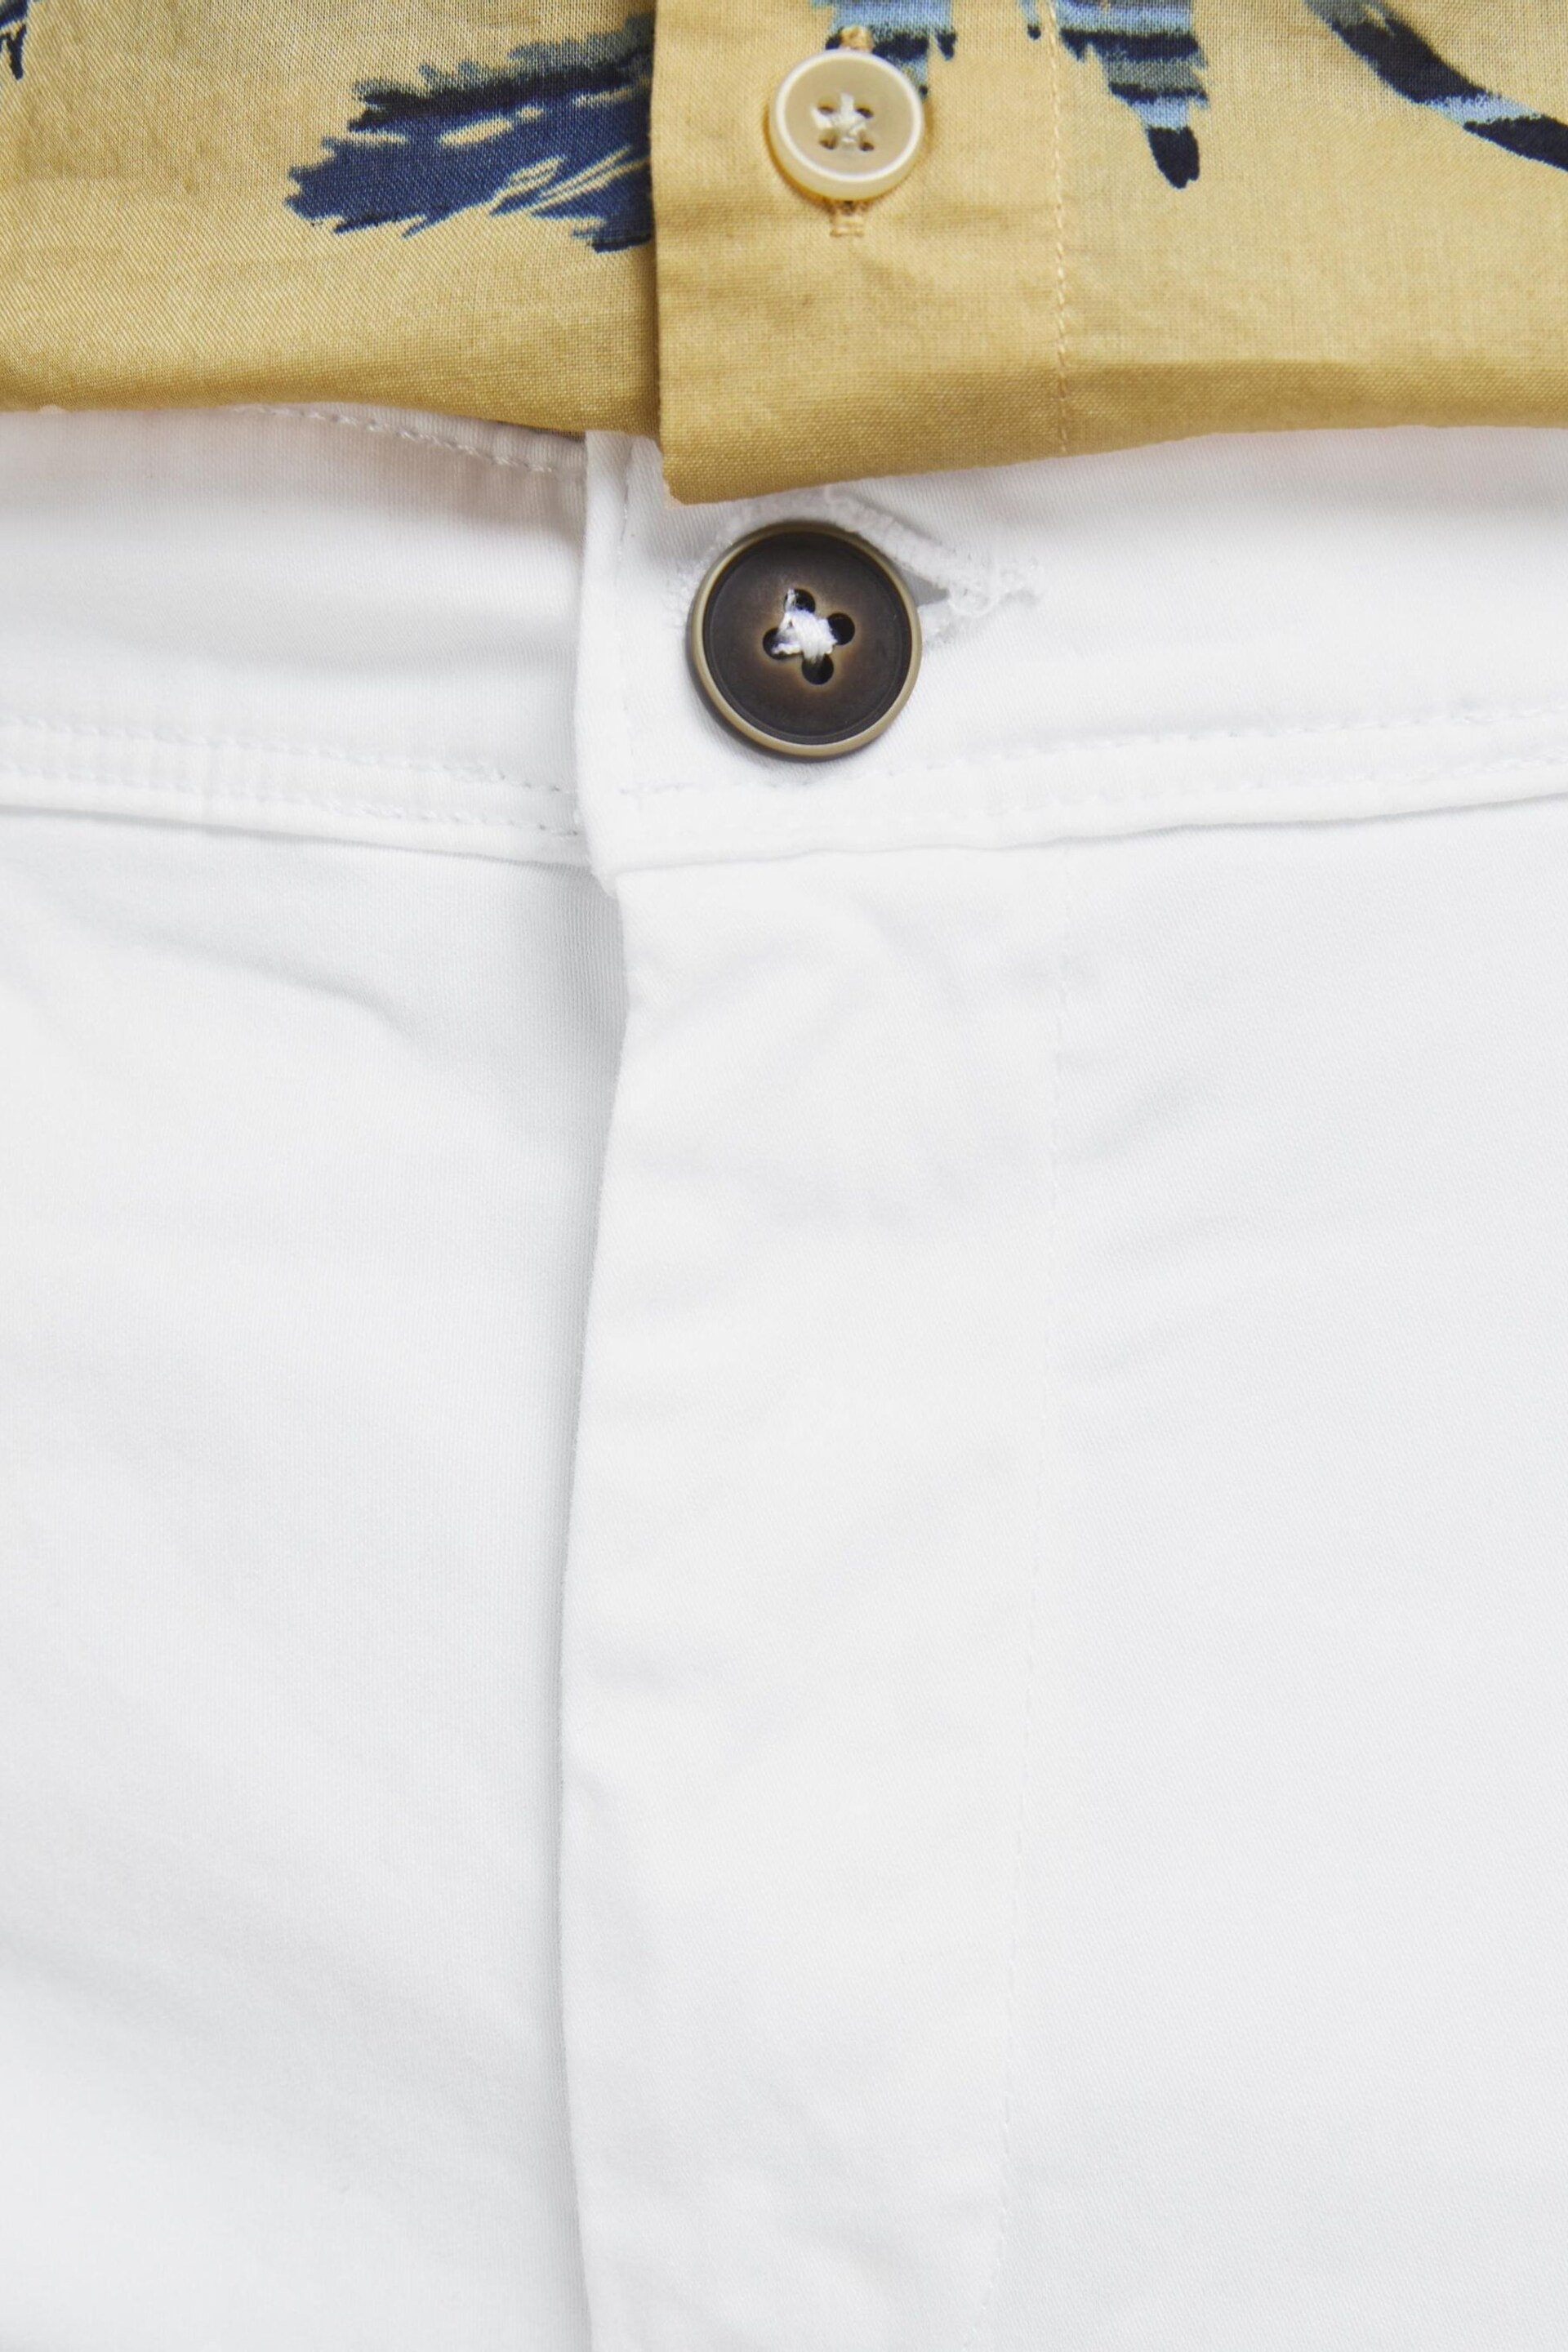 JACK & JONES White Slim Chino Shorts - Image 4 of 7